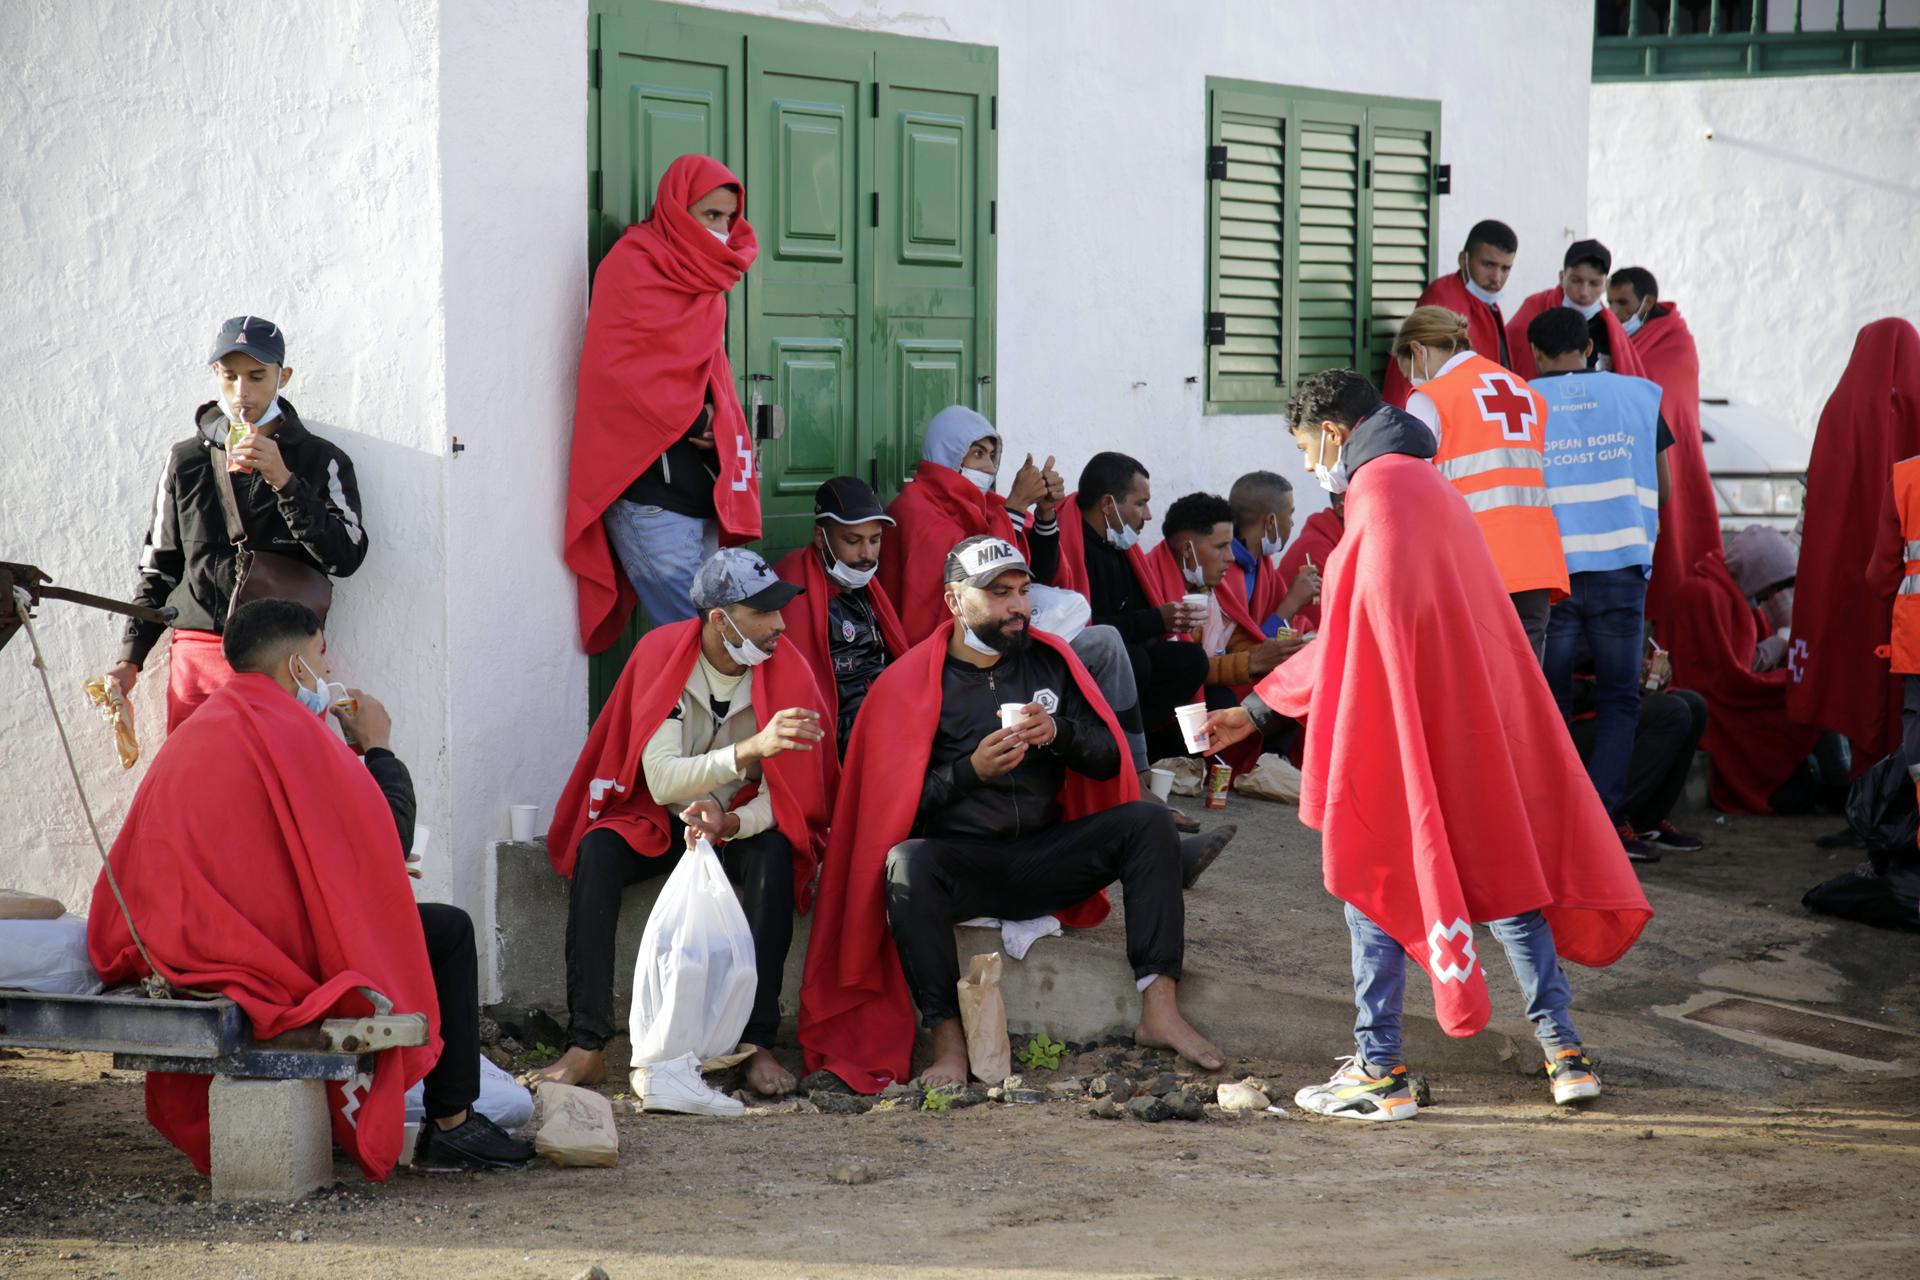 Foto de archivo de 23 personas de origen magrebí llegadas a la playa de Famara (Lanzarote) el 21 de octubre de 2022. EFE/ Adriel Perdomo